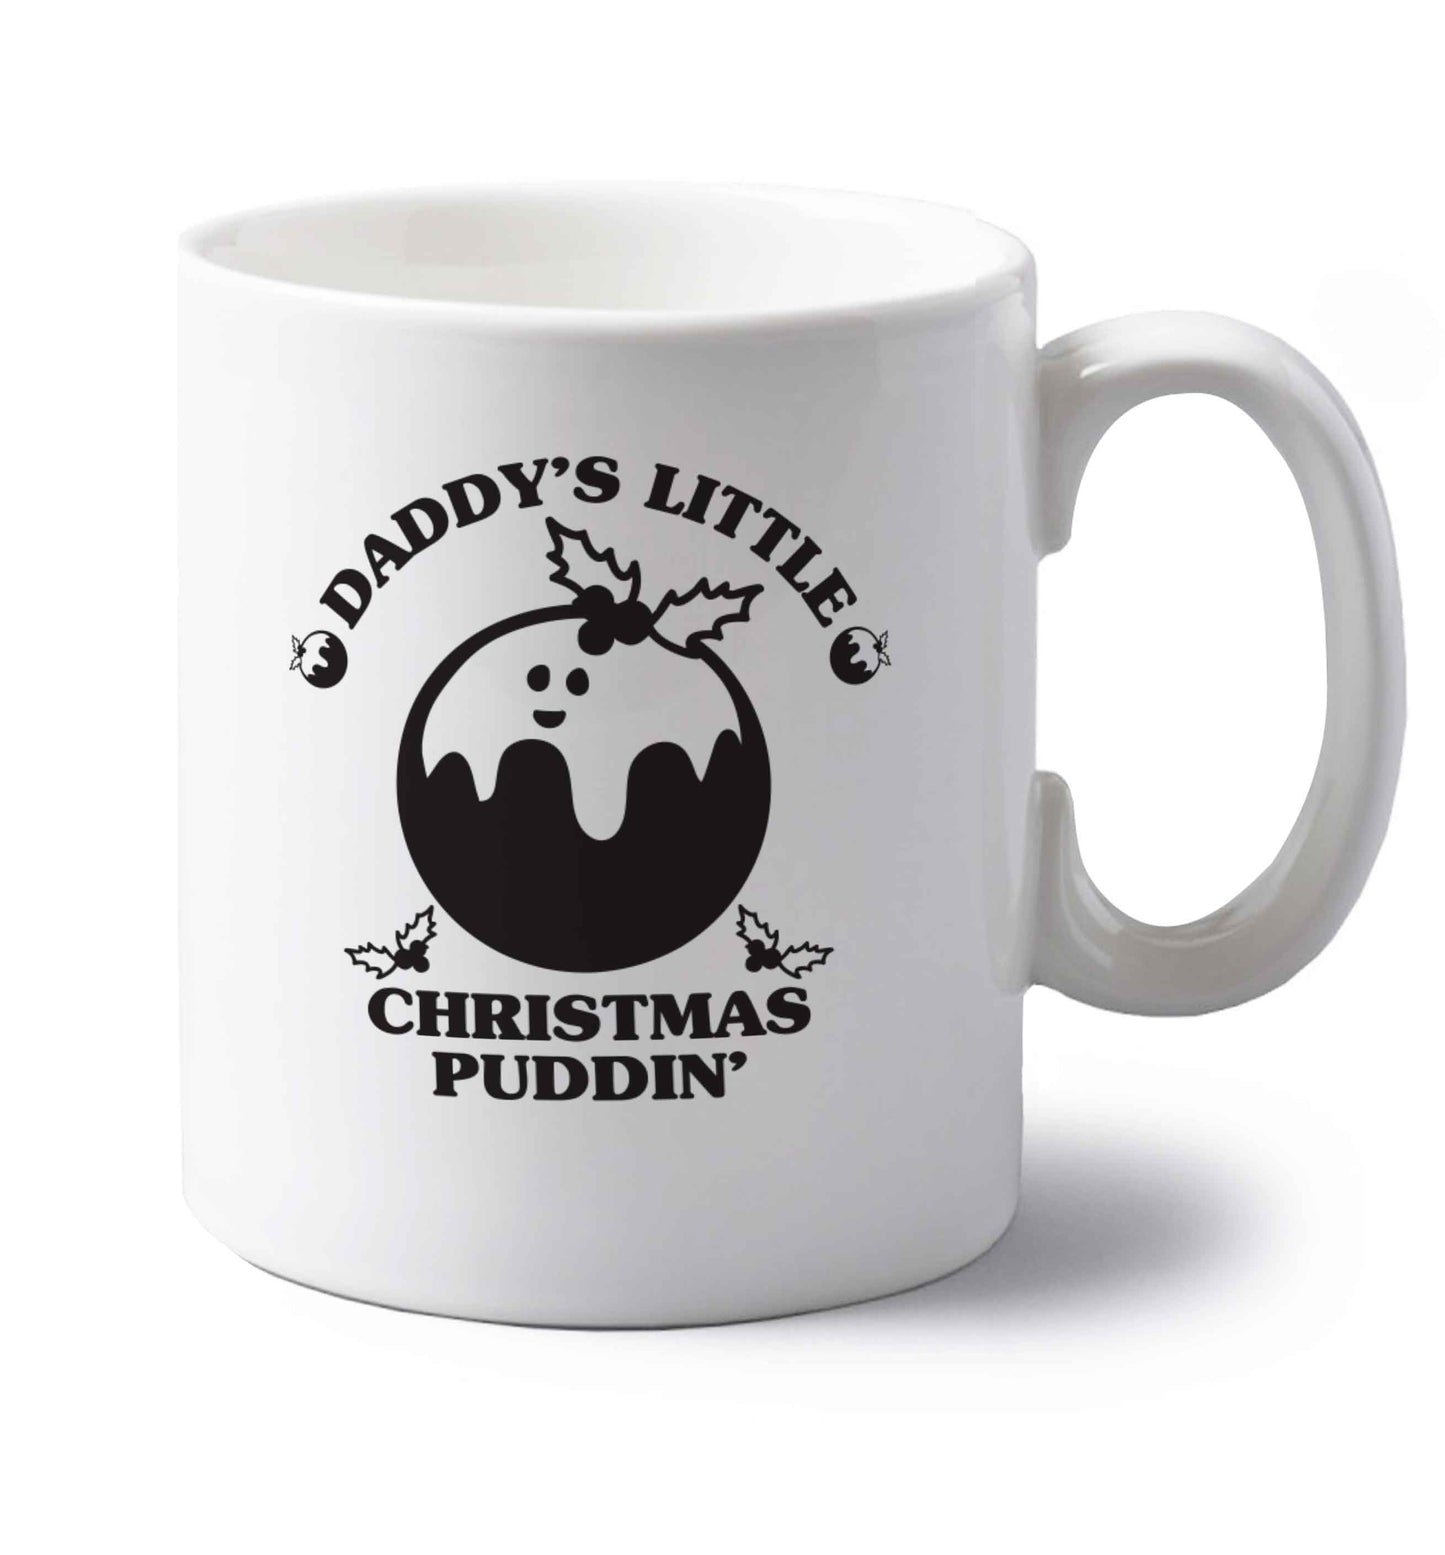 Daddy's little Christmas puddin' left handed white ceramic mug 